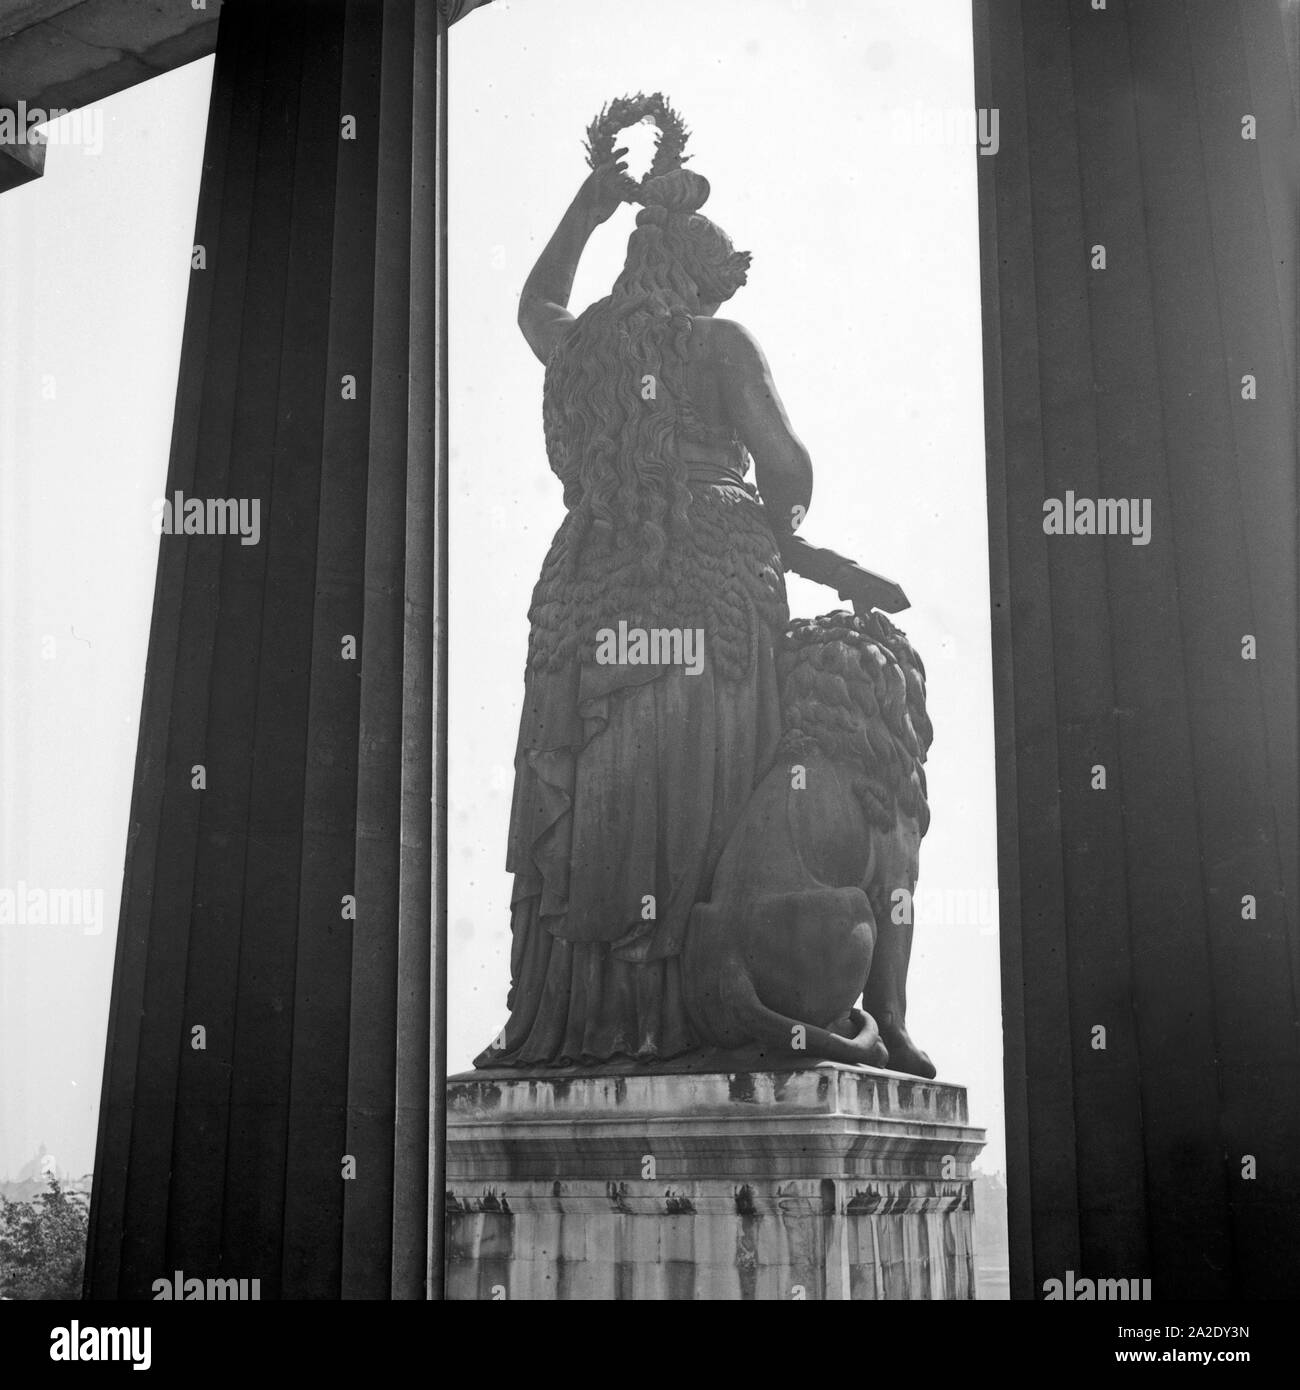 Rückansicht der Bayern zwischen den Säulen der Ruhmeshalle in München, Deutschland 1930er Jahre. Rückseite der Bavaria Statue aus zwischen die Spalten der Ruhmeshalle Ruhmeshalle in München, Deutschland 1930. Stockfoto